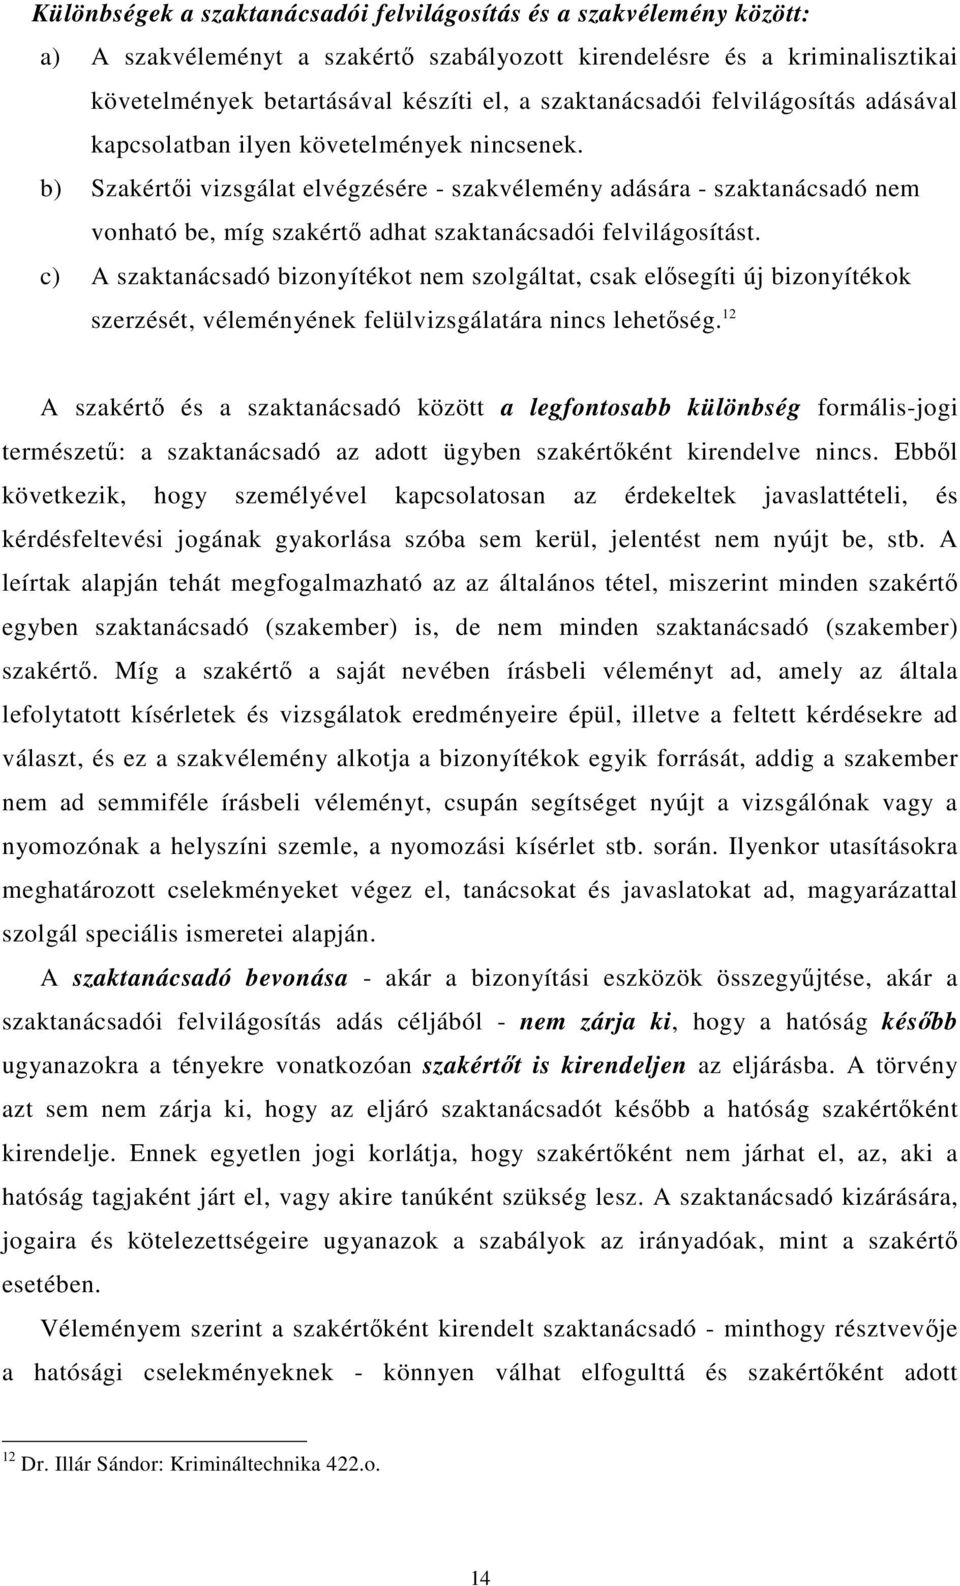 b) Szakértıi vizsgálat elvégzésére - szakvélemény adására - szaktanácsadó nem vonható be, míg szakértı adhat szaktanácsadói felvilágosítást.